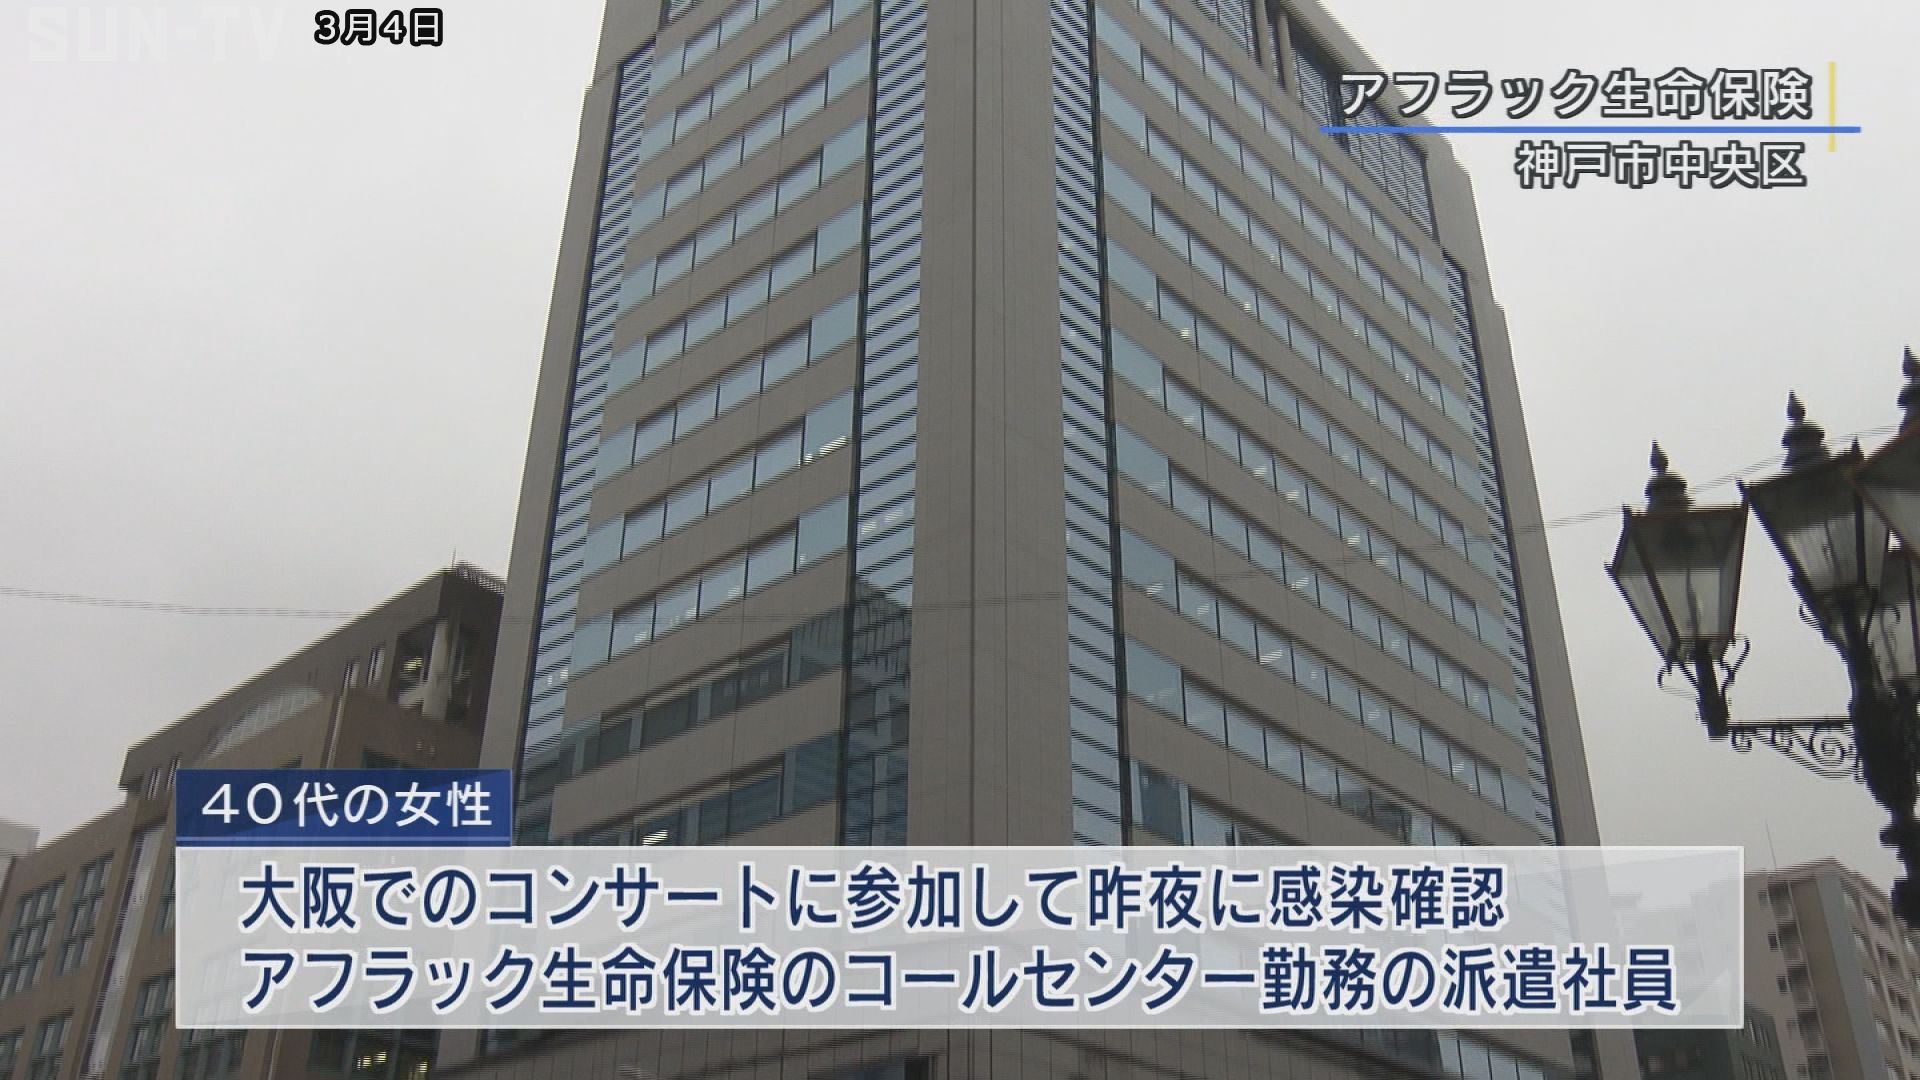 神戸市で2人の新型コロナ感染を確認 専門窓口で相談受付 サンテレビニュース